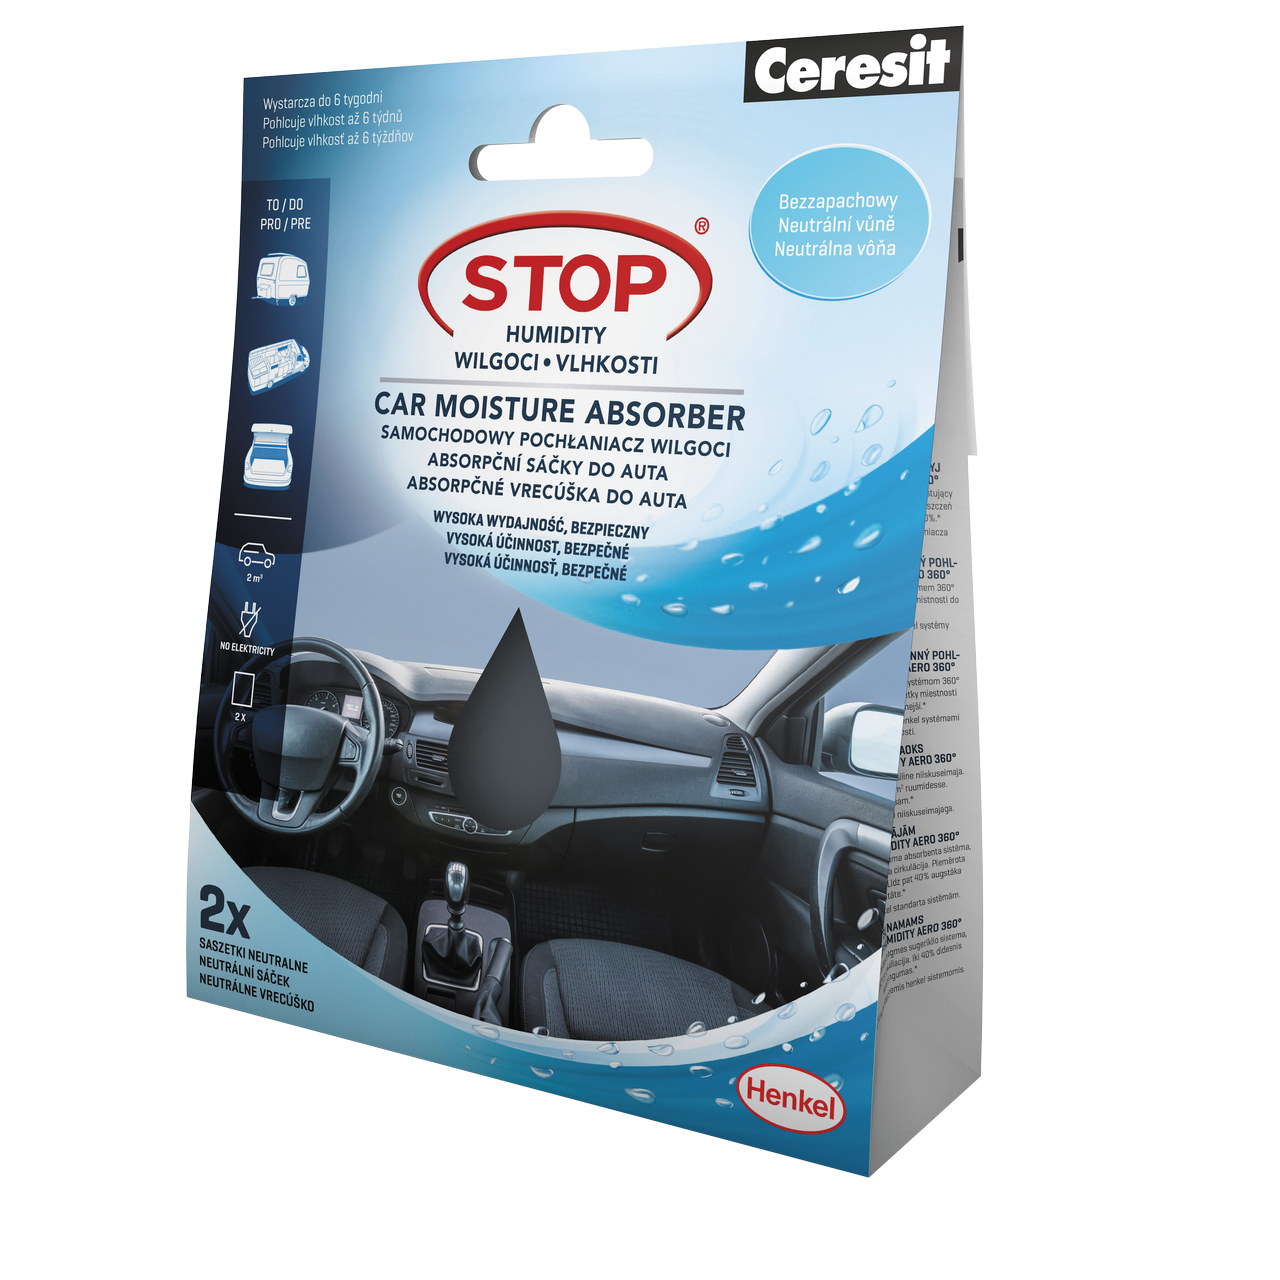 Ceresit STOP VLHKOSTI absorpční sáčky do auta 2x50 g neutral Ceresit